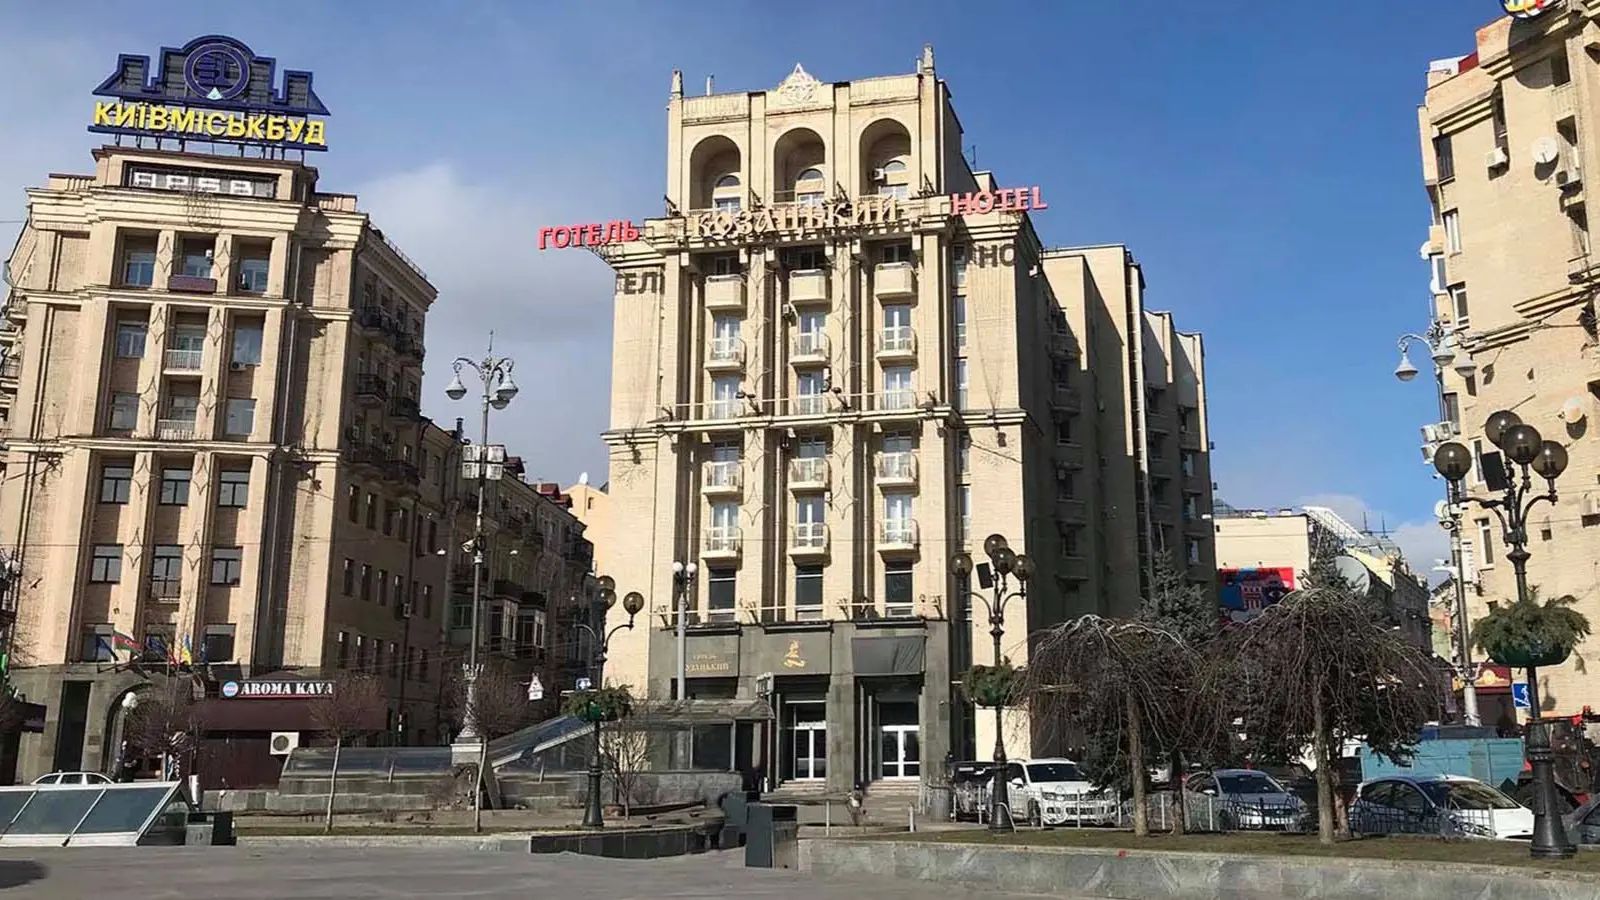 Готель «Козацький» пішов з молотка за 400 млн гривень.